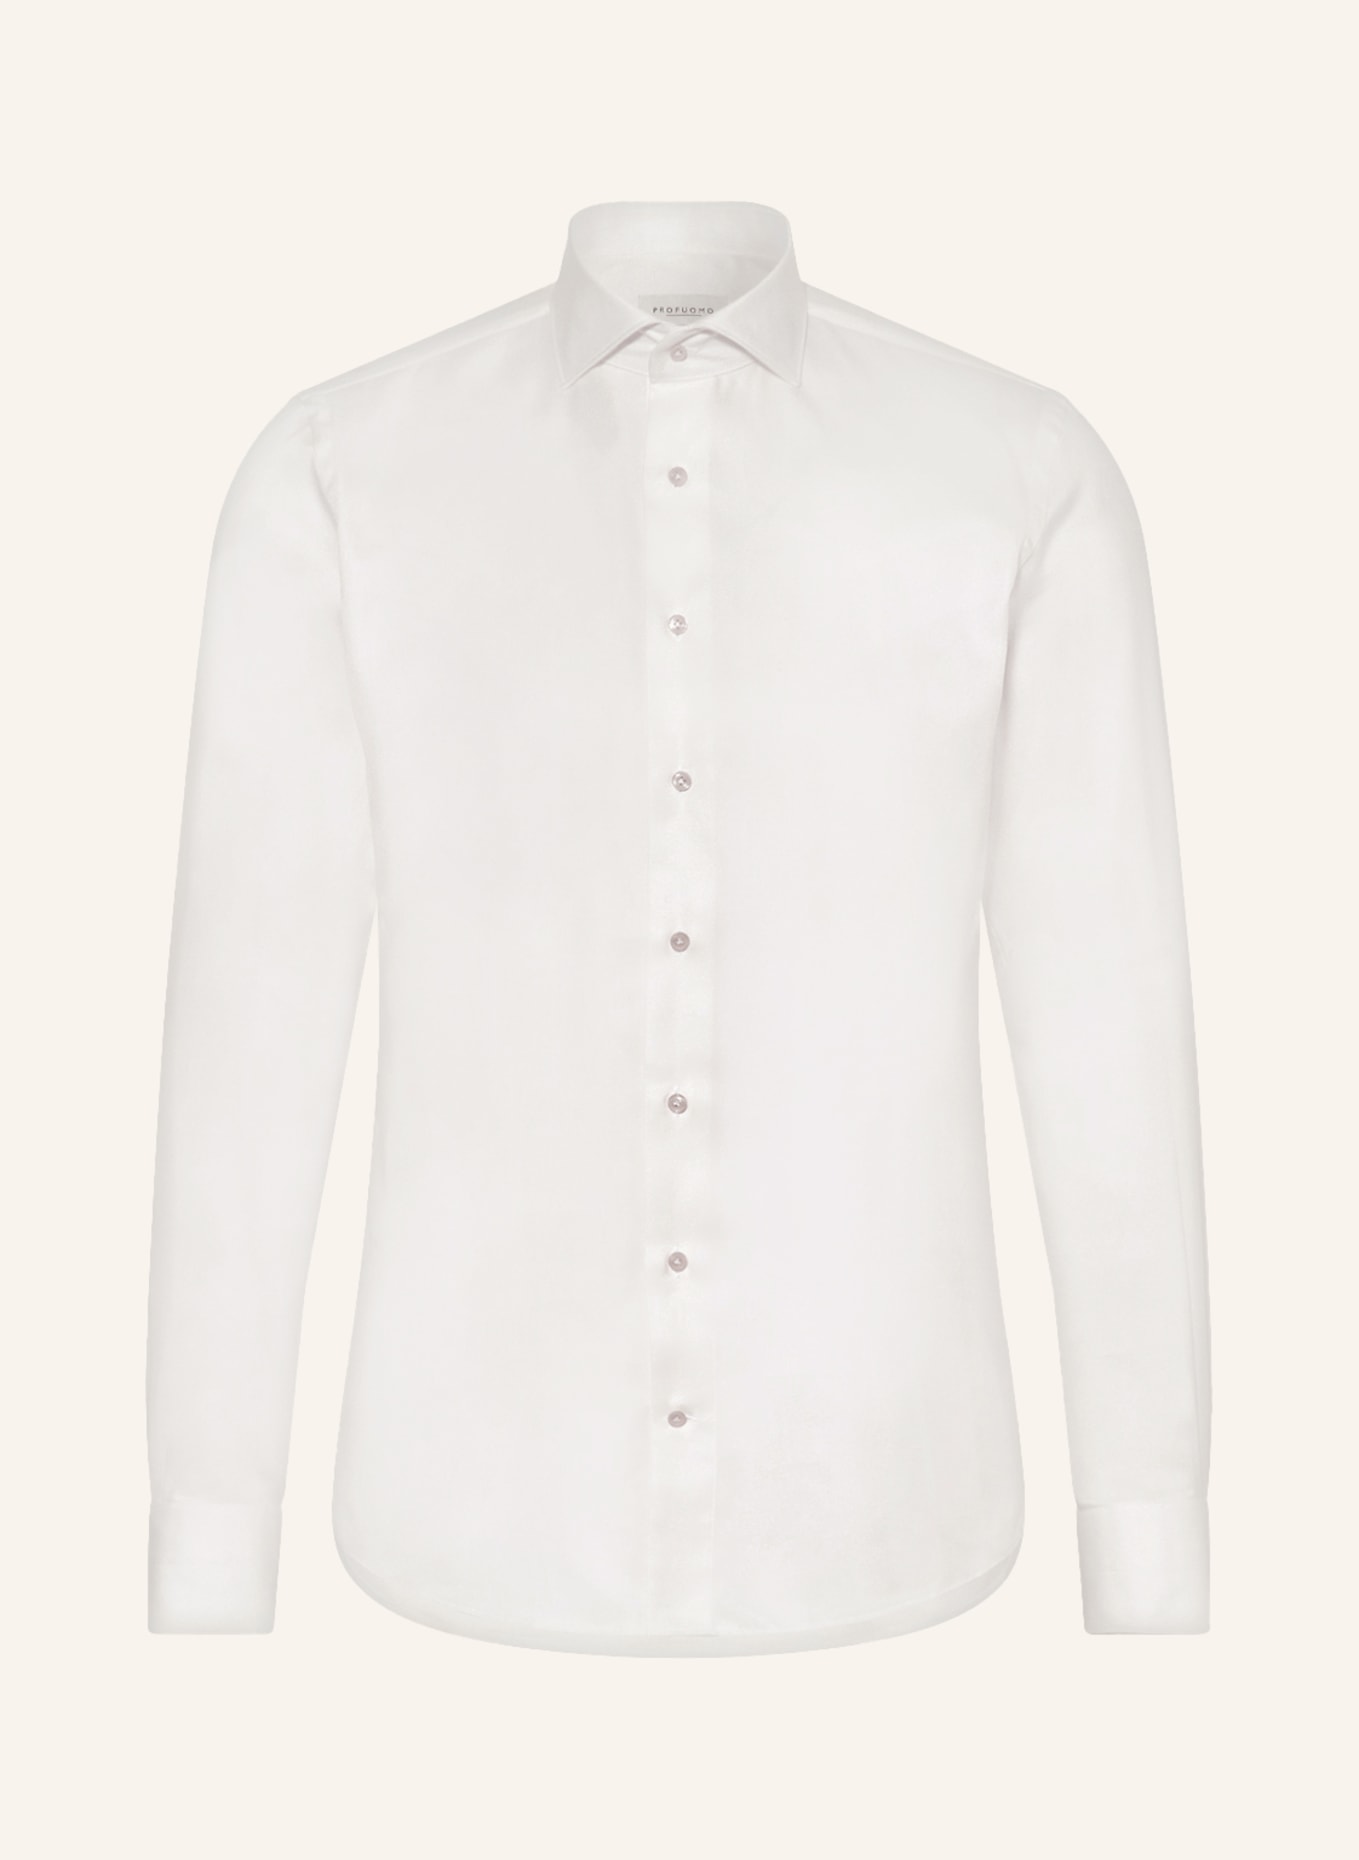 PROFUOMO Shirt slim fit, Color: CREAM (Image 1)